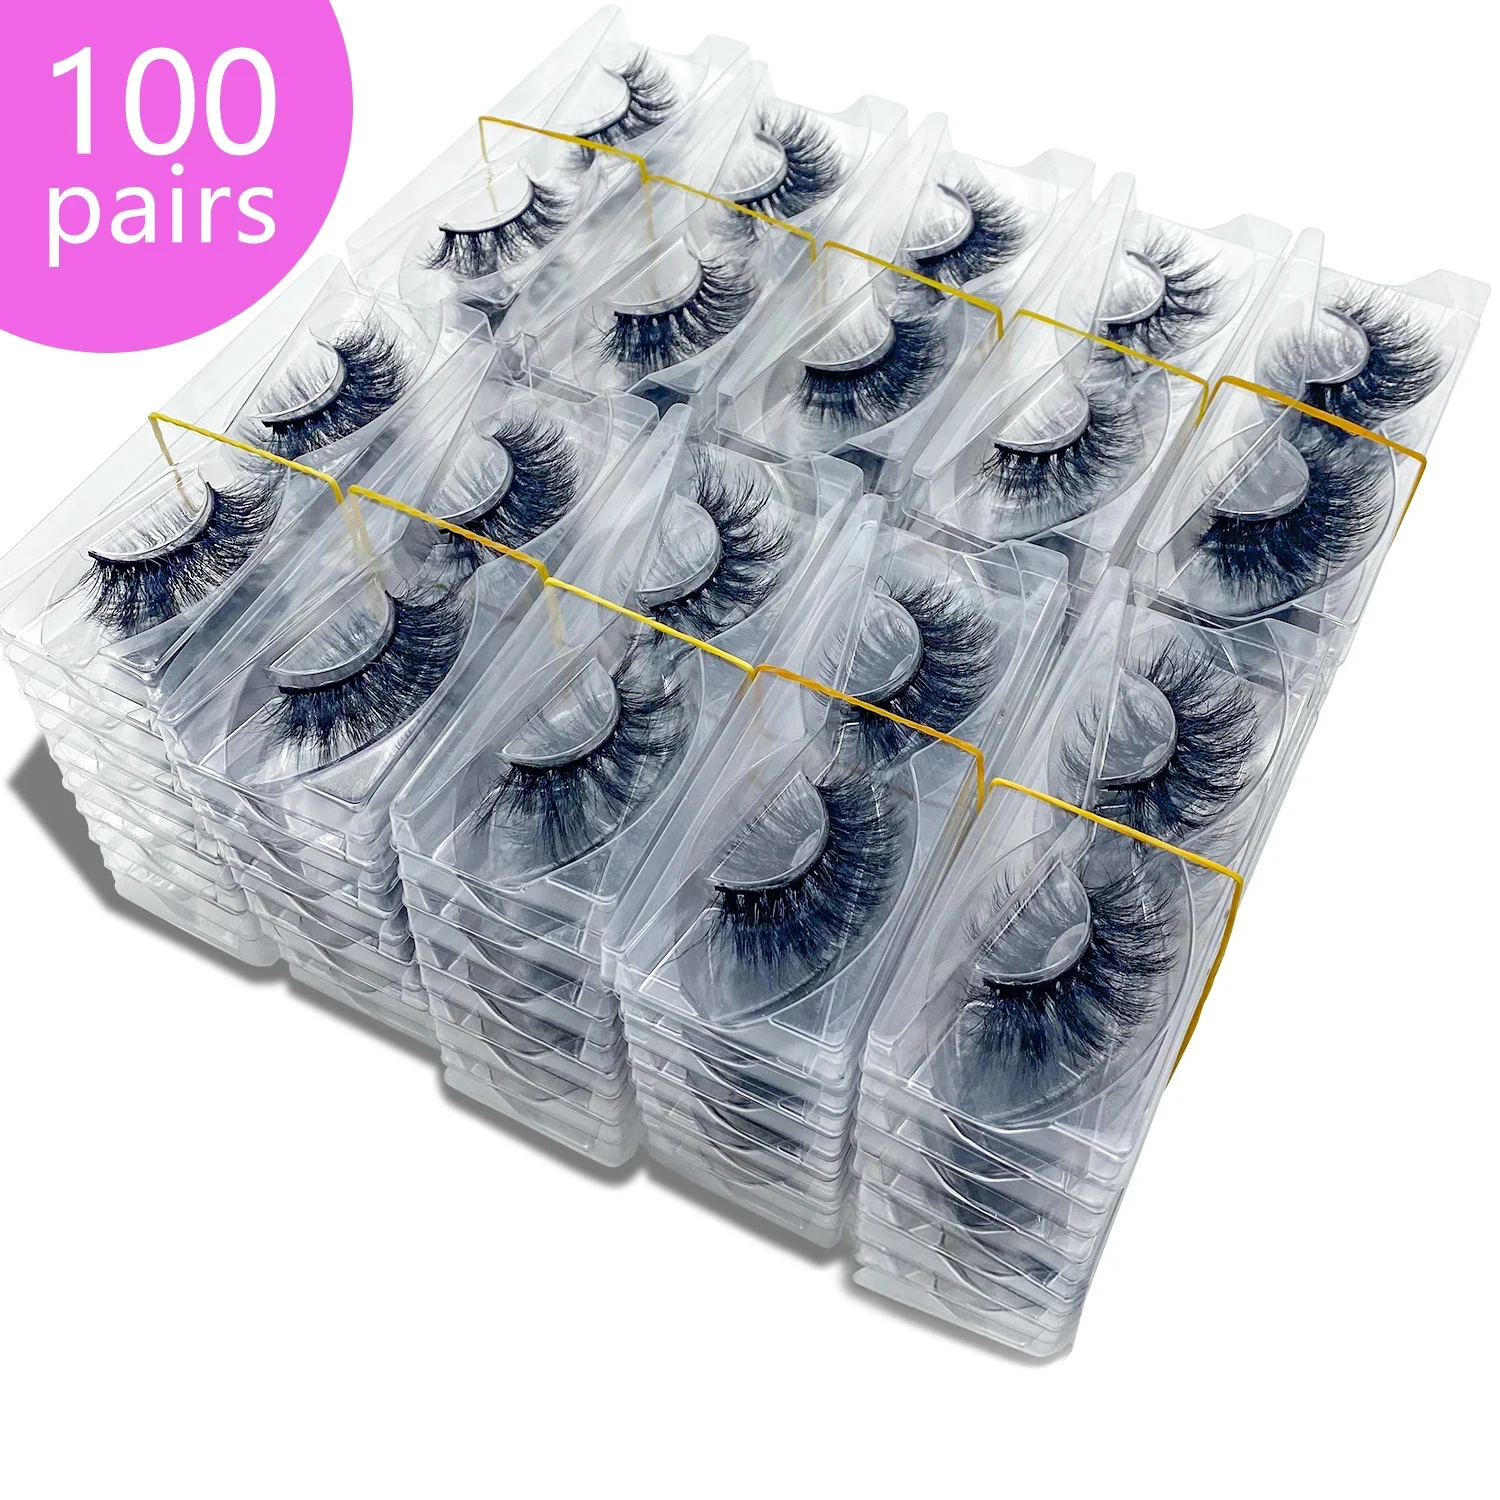 Wholesale 100pairs  Makeup Eyelash 3D Mink Lashes Fluffy Soft Wispy Volume Natural long Cross False Eyelashes Reusable Eyelash